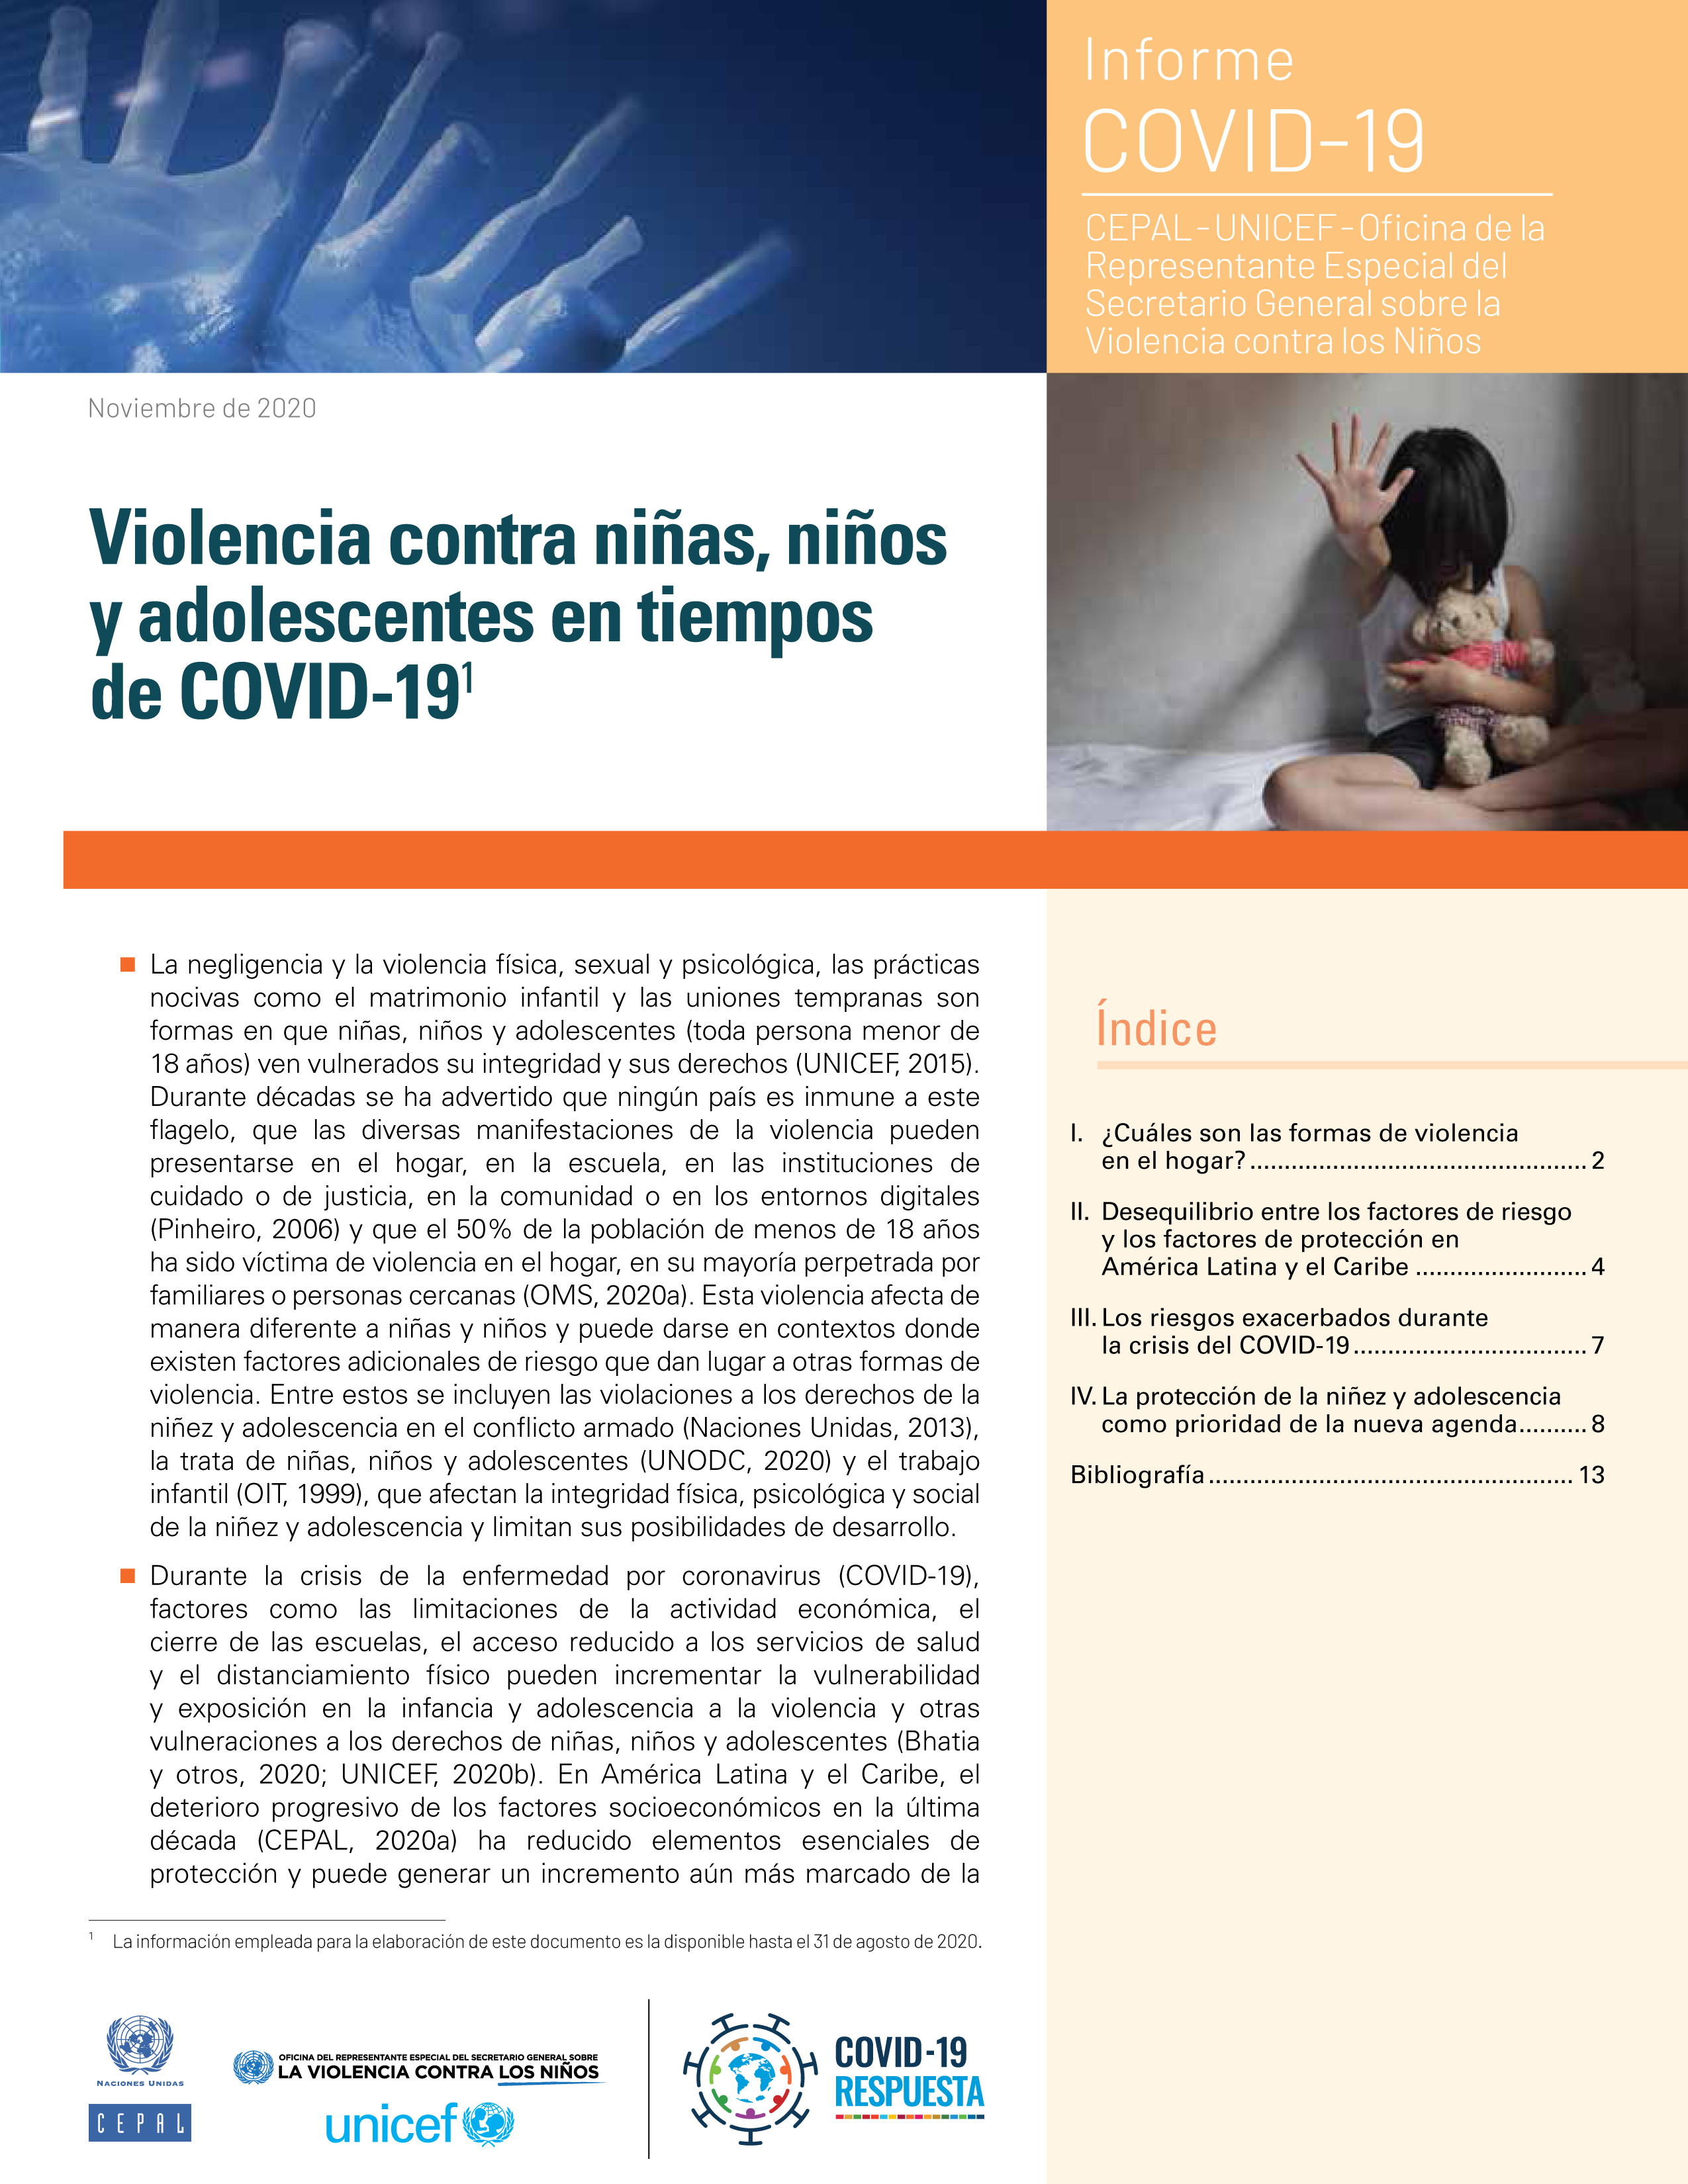 image of Violencia contra niñas, niños y adolescentes en tiempos de COVID-19